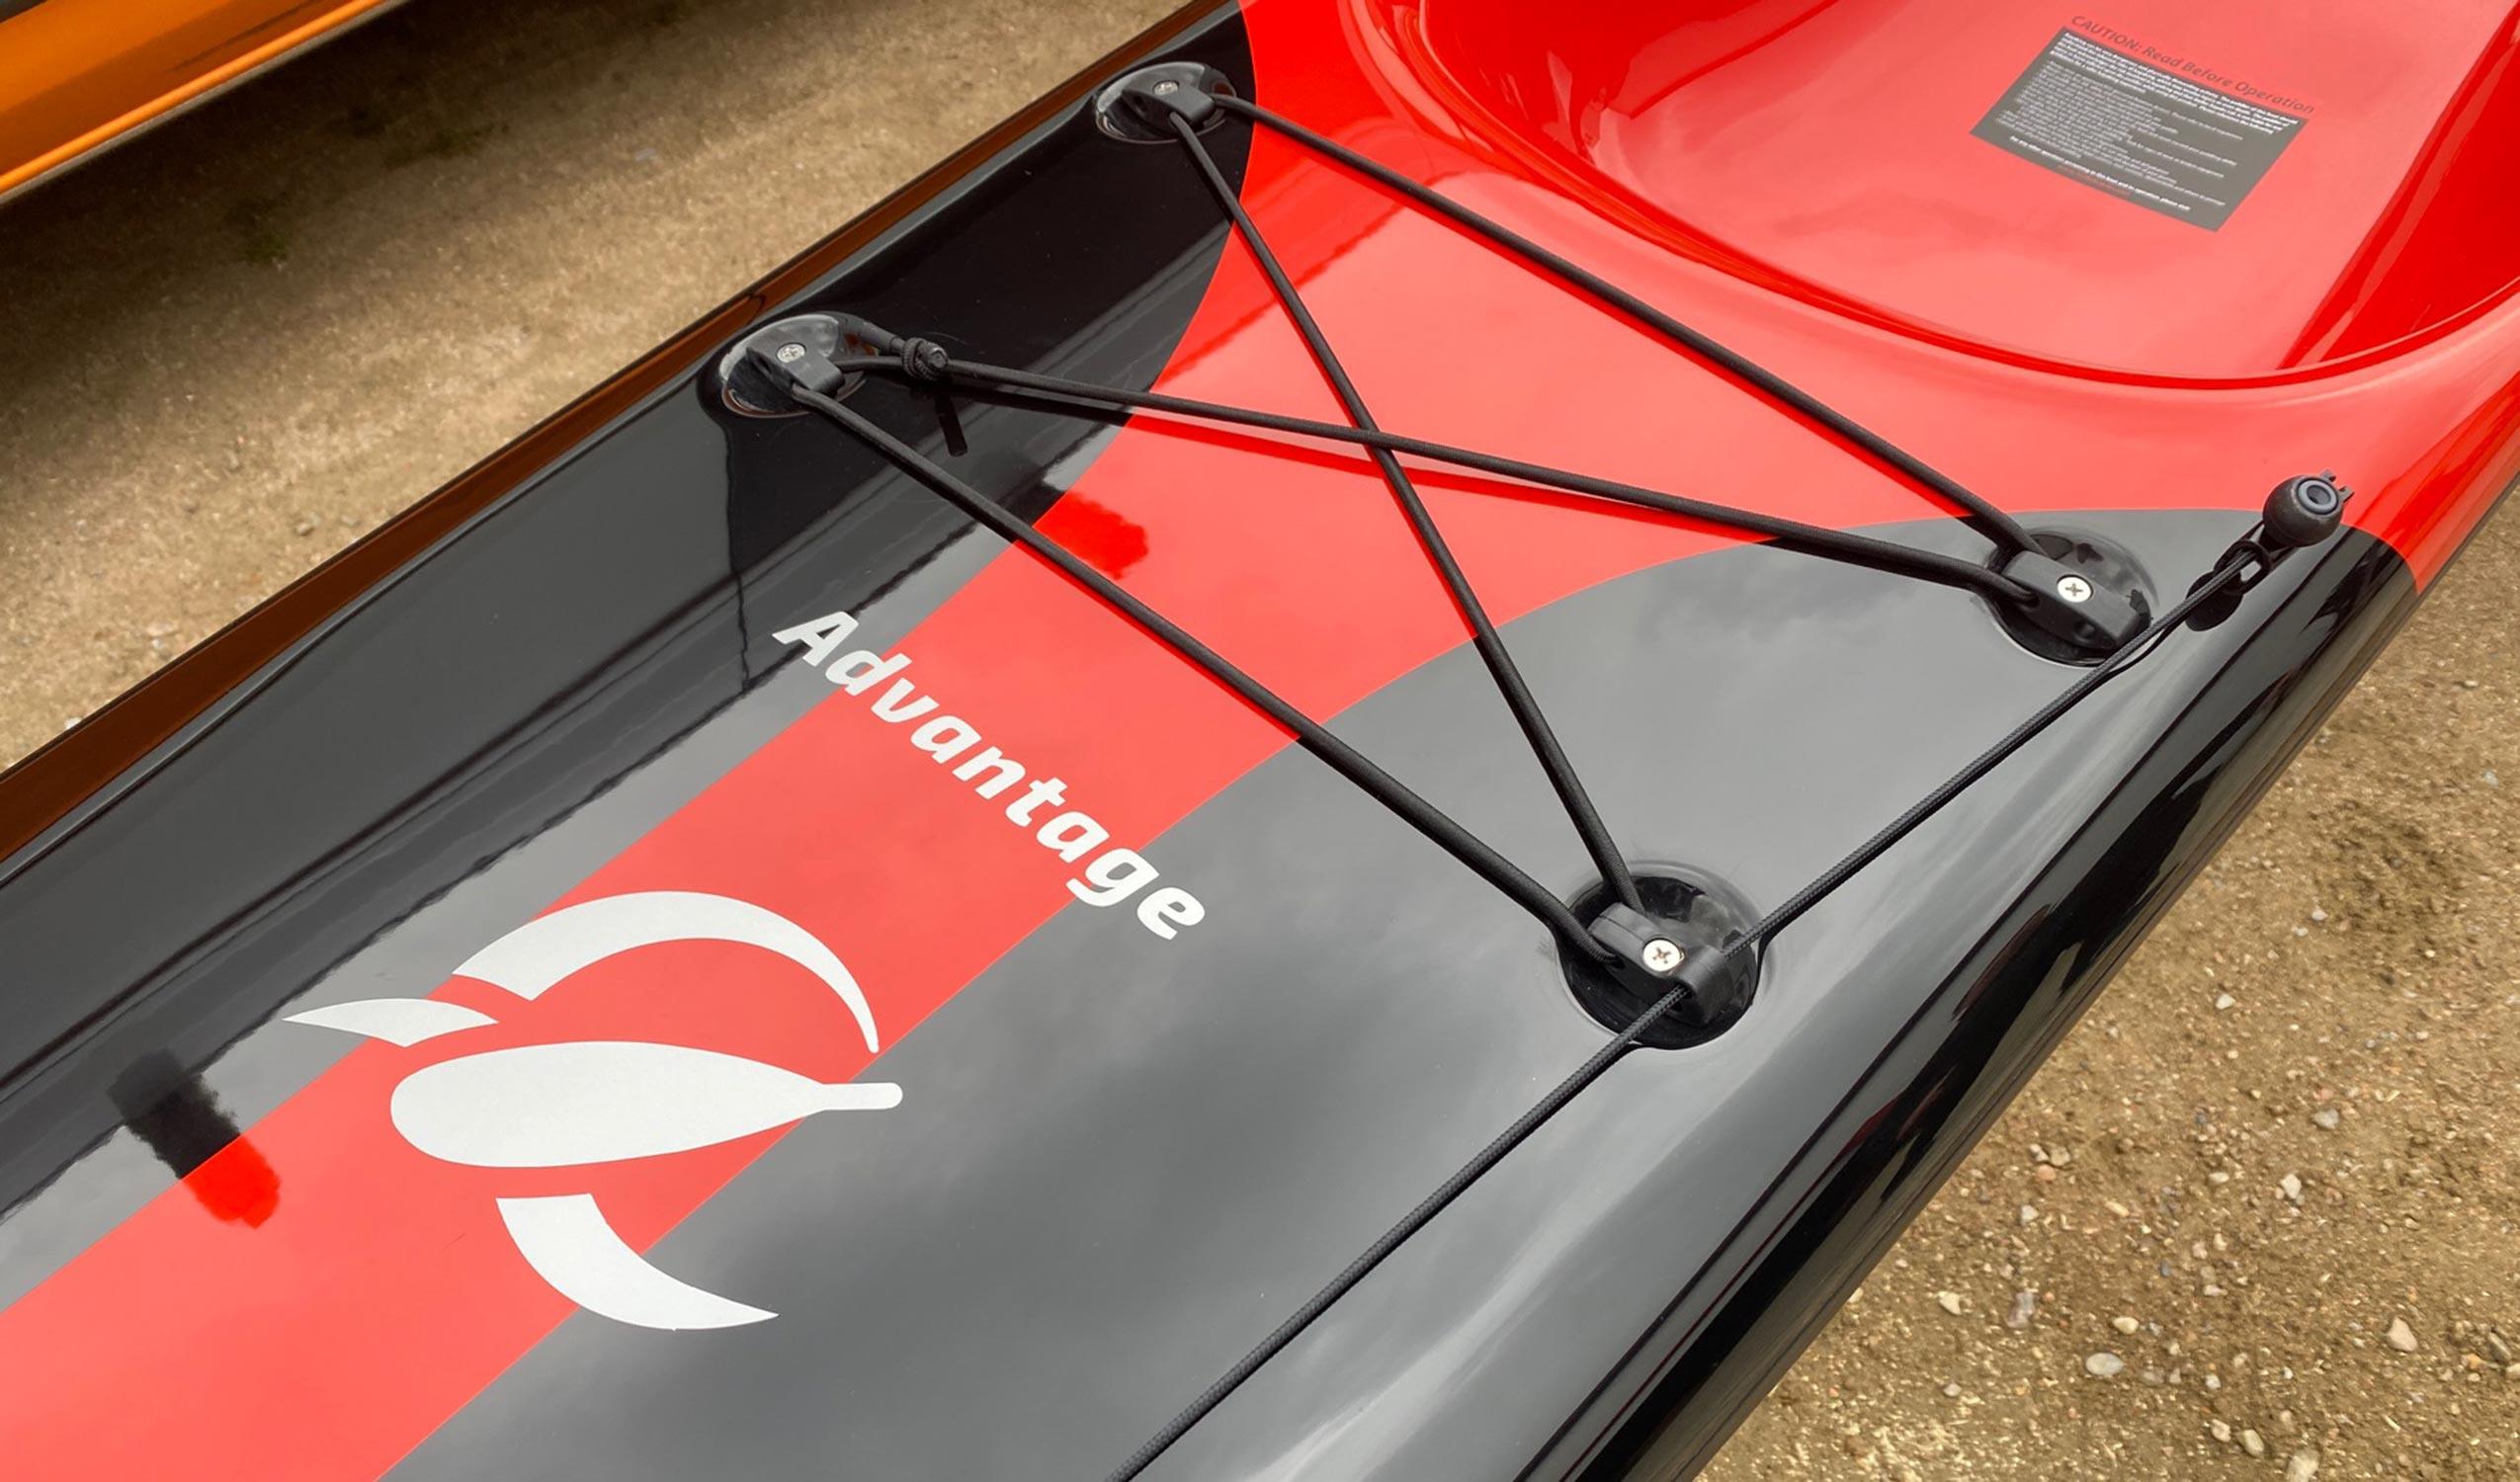 Produktbild von Kajak " S18S X Advantage-schwarz rot " der Marke STELLAR Lightweight für 2890.00 €. Erhältlich online bei Lite Venture ( www.liteventure.de )